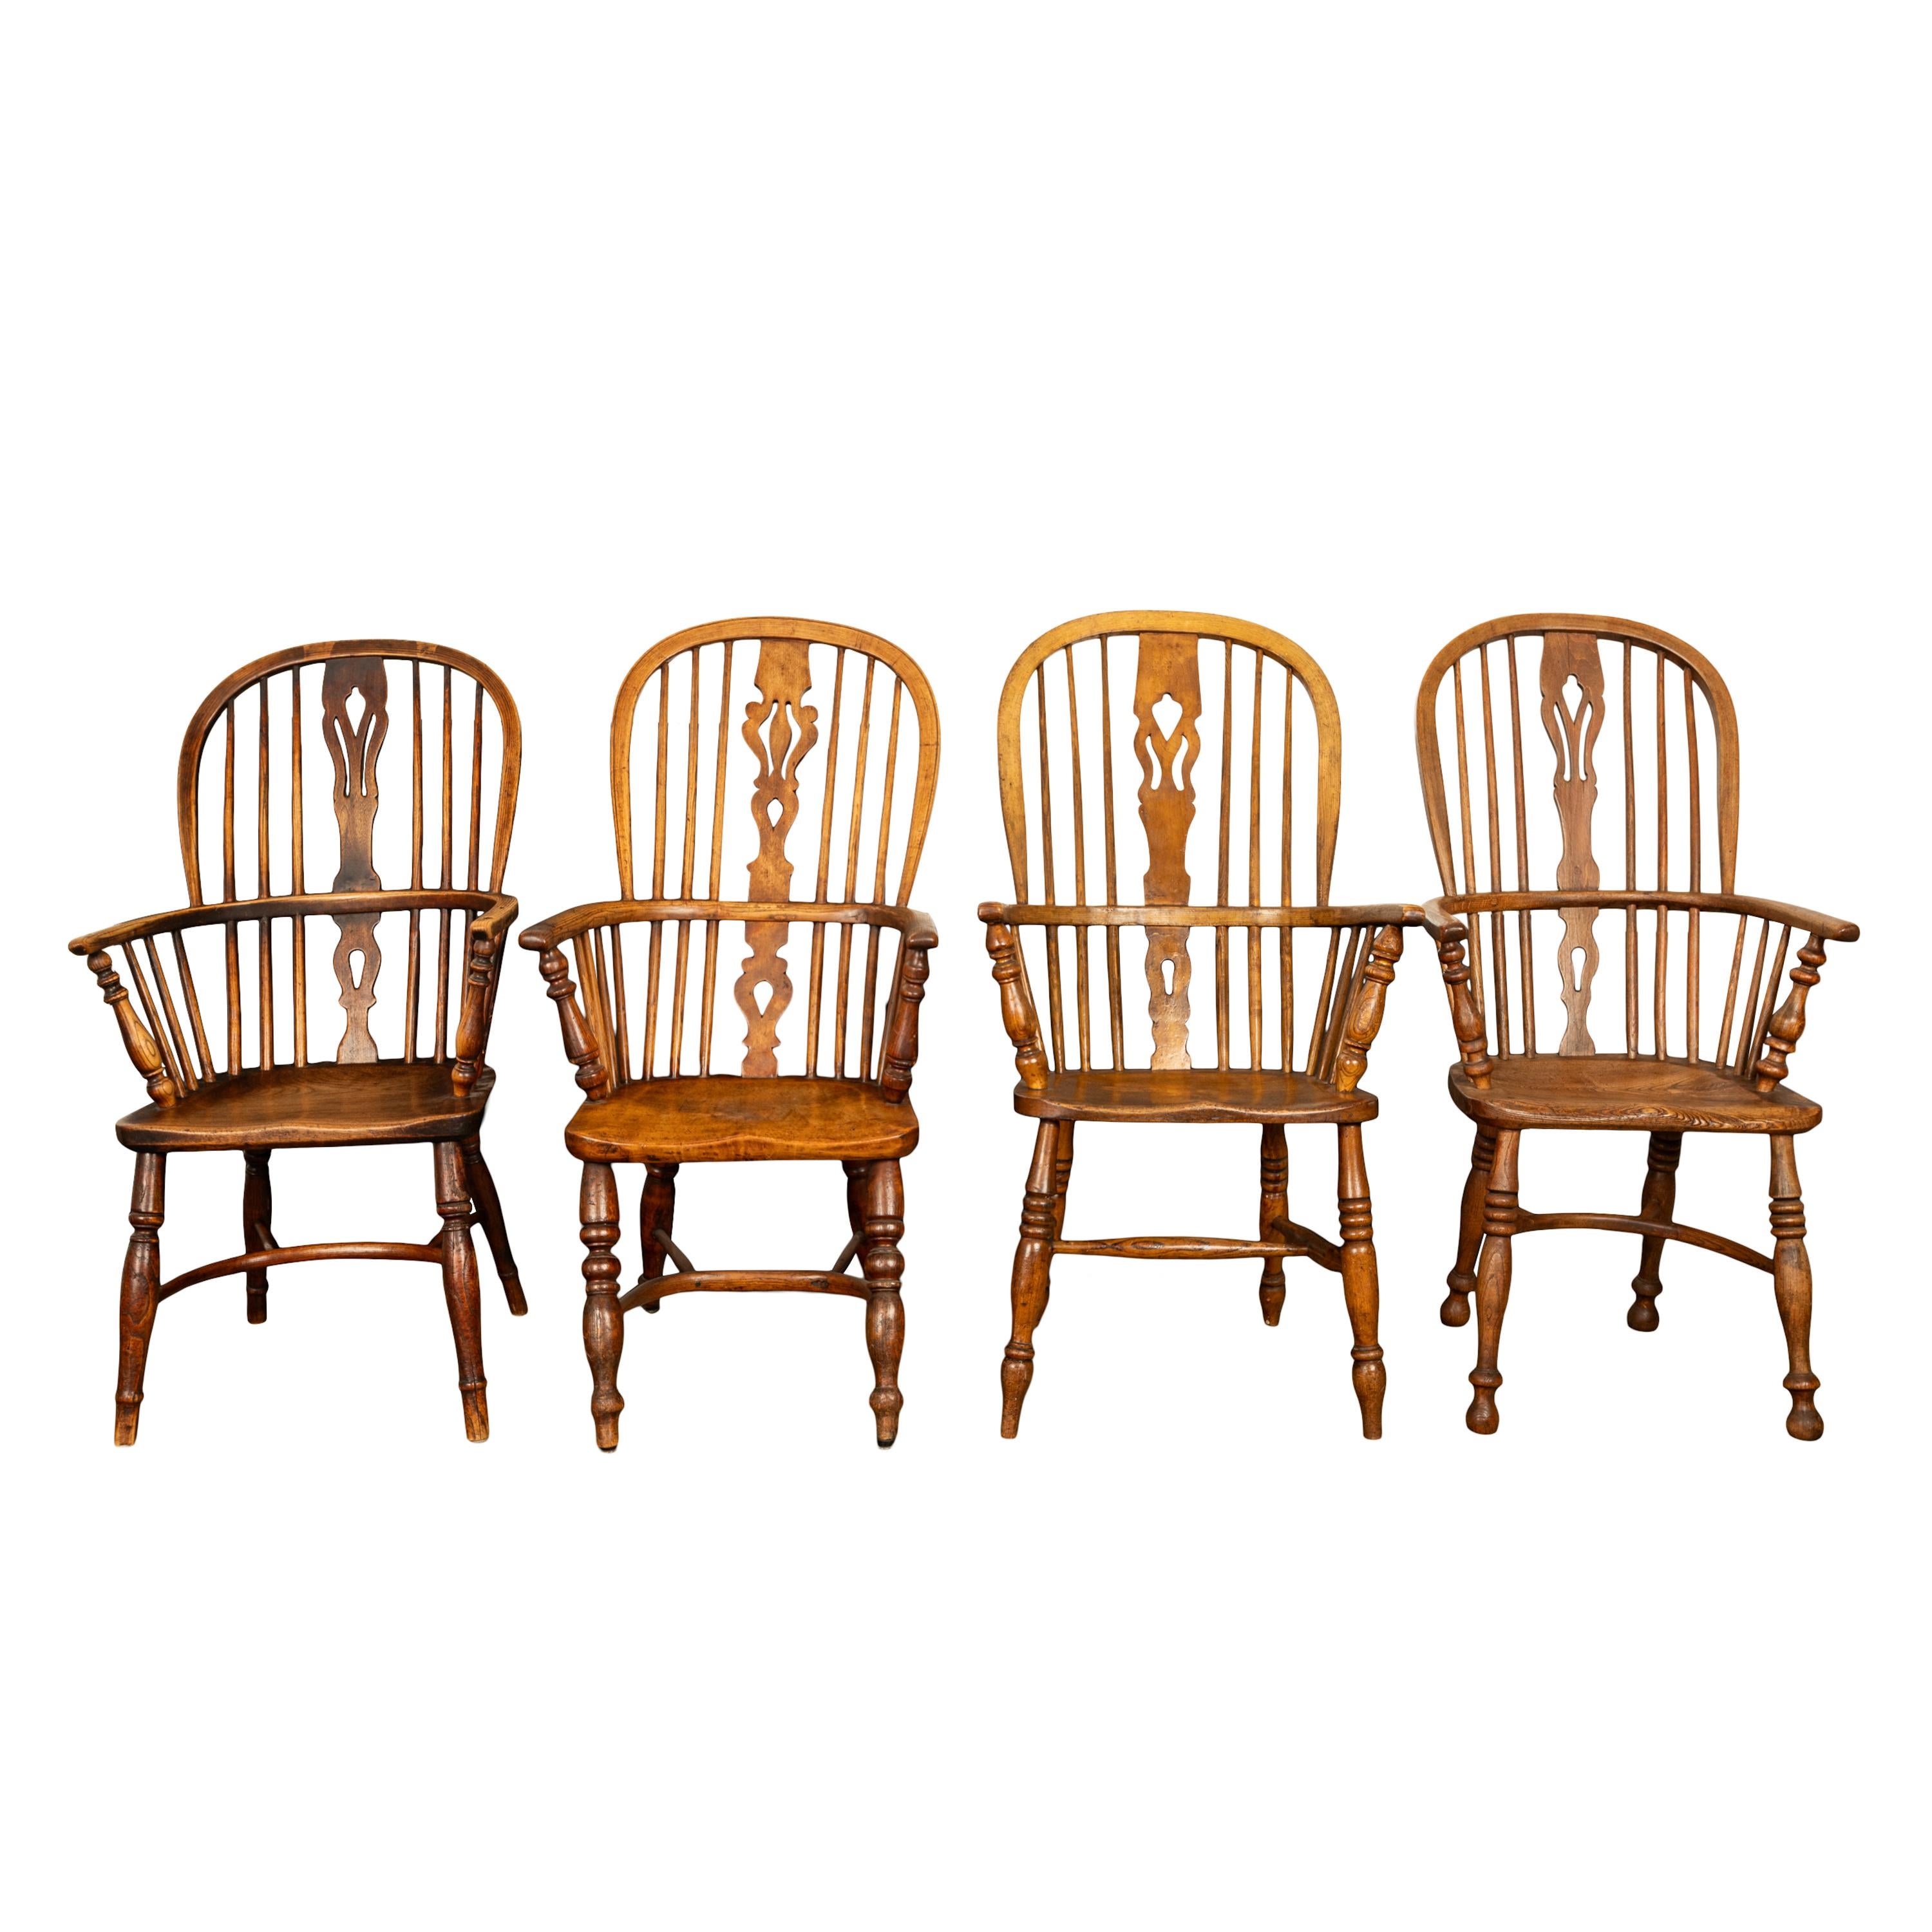 Très bel ensemble de 4 fauteuils Windsor en frêne et orme, vers 1840.
Cet ensemble arlequin de quatre chaises Windsor provient de la région du Buckinghamshire. Le dossier en arceau, les fuseaux, les pieds et les brancards sont en frêne et les sièges